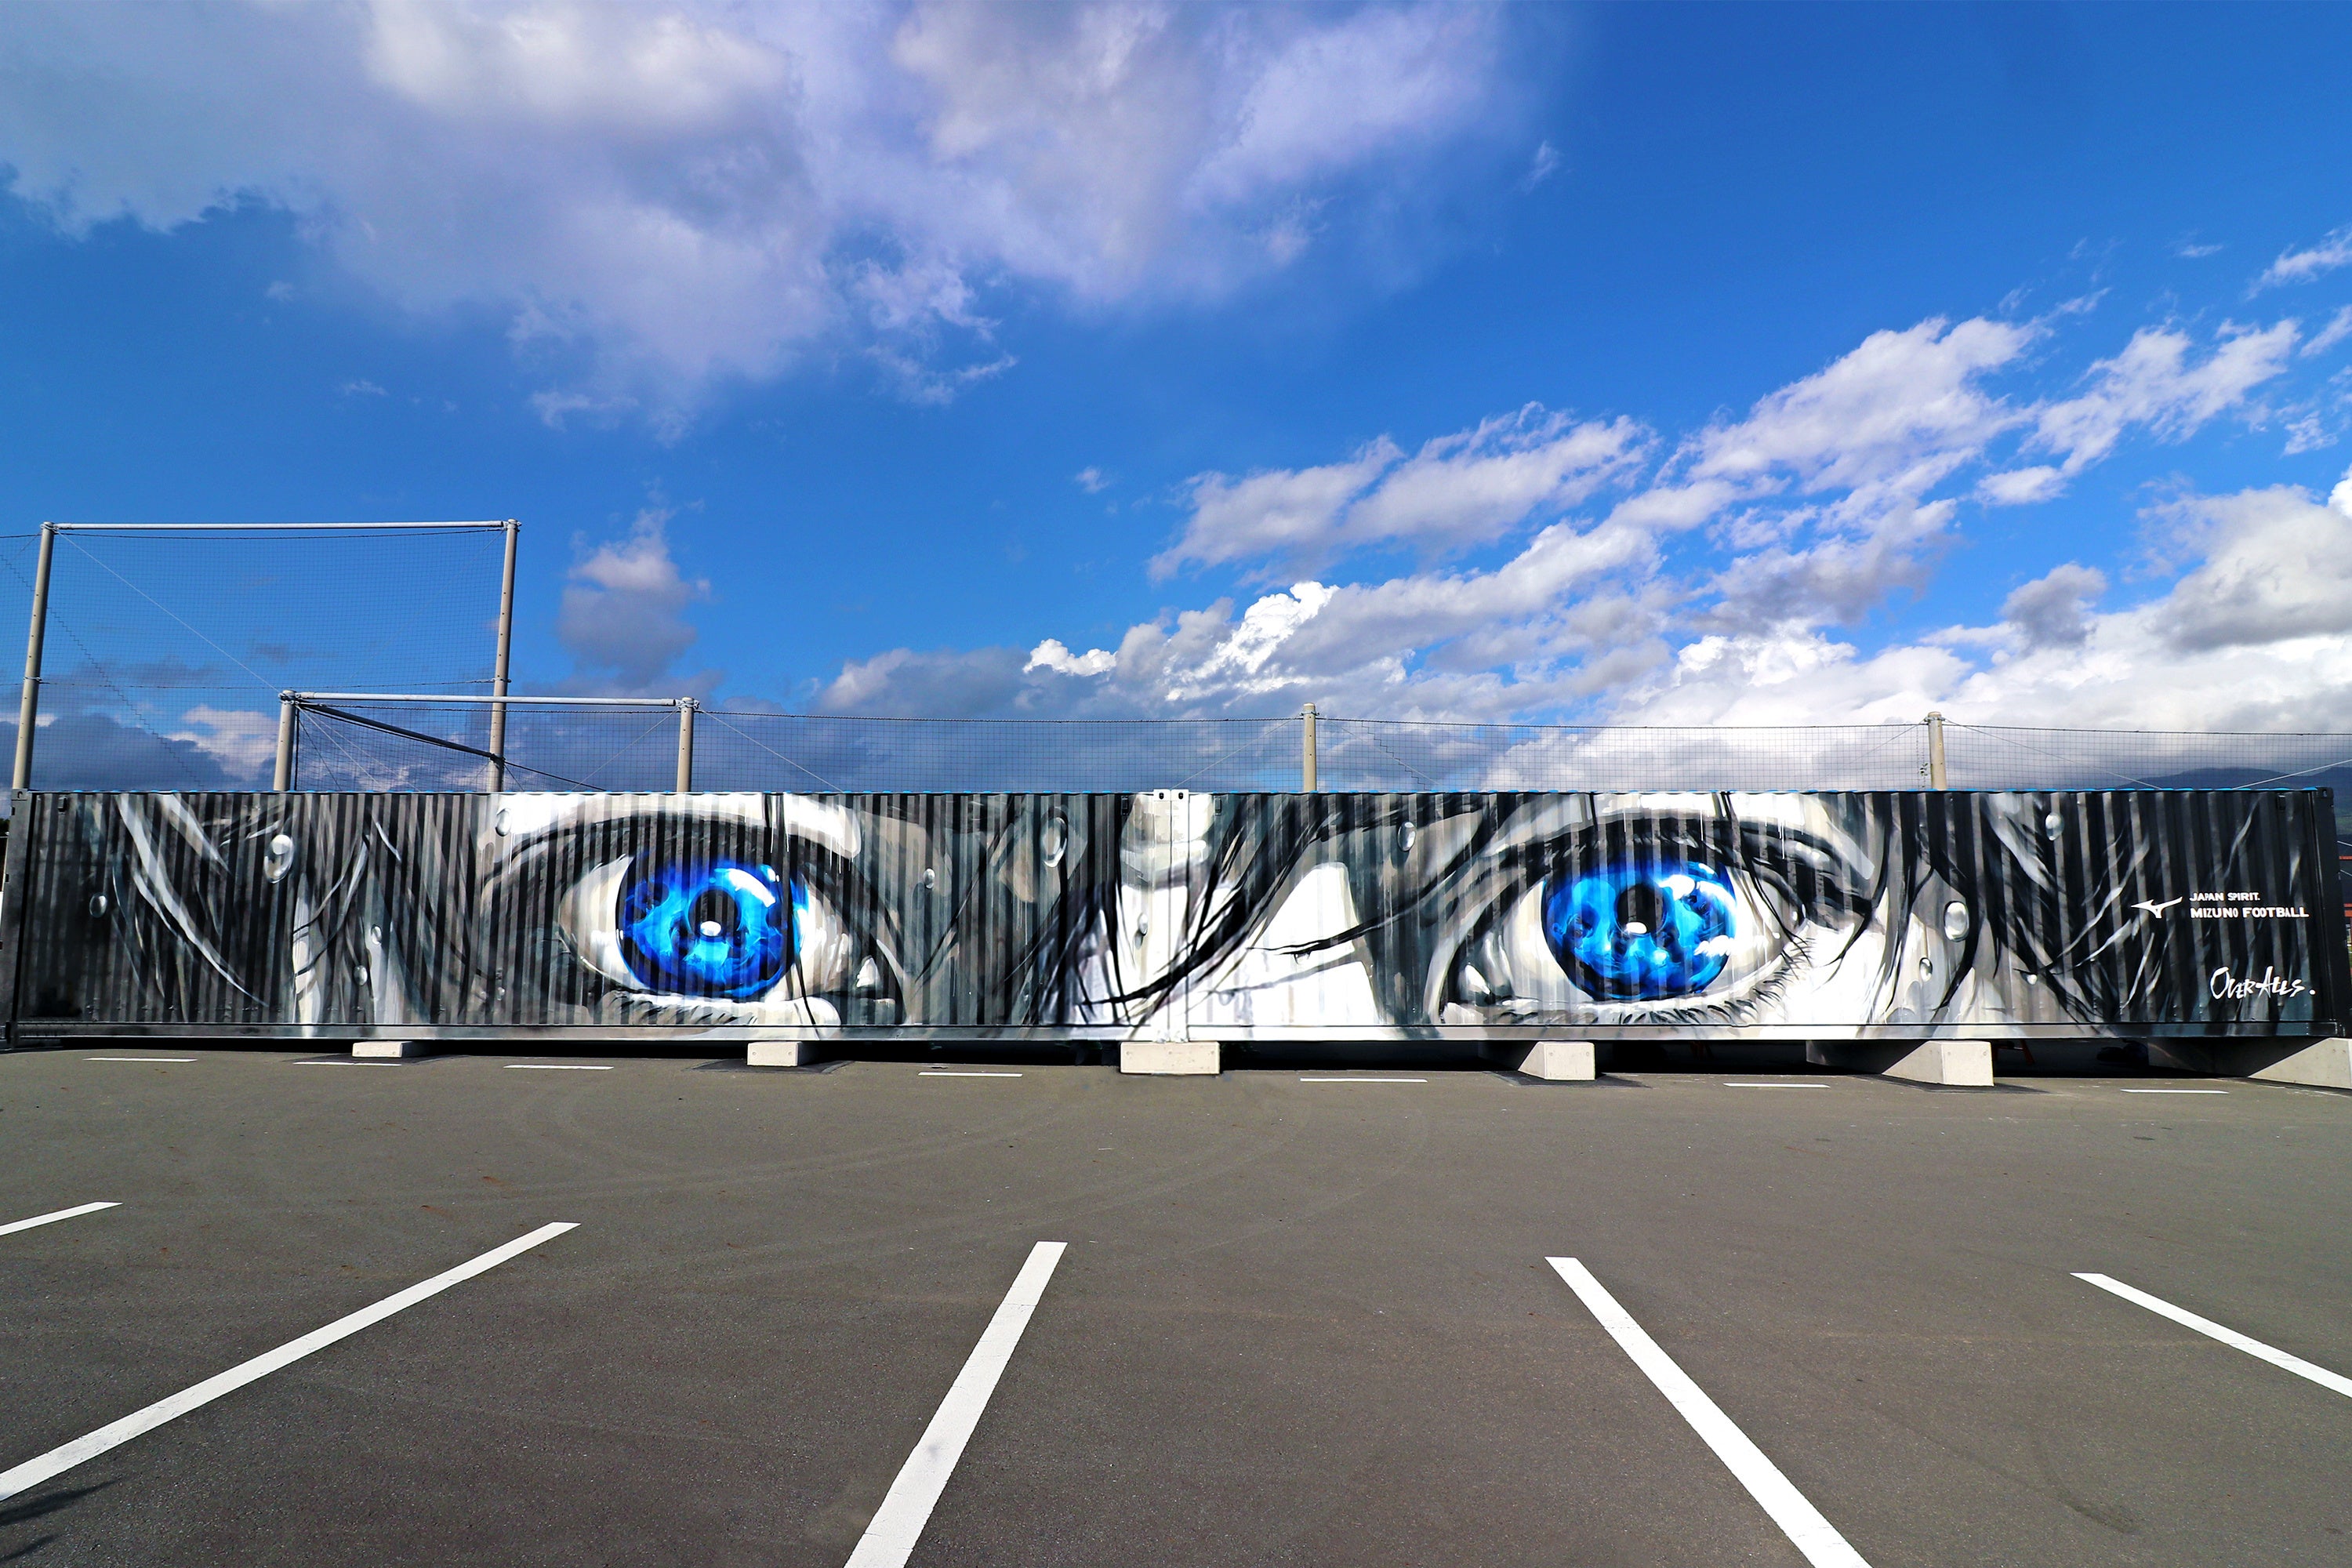 鹿島アントラーズ本拠地のカシマスタジアムにジーコを描いた壁画を制作